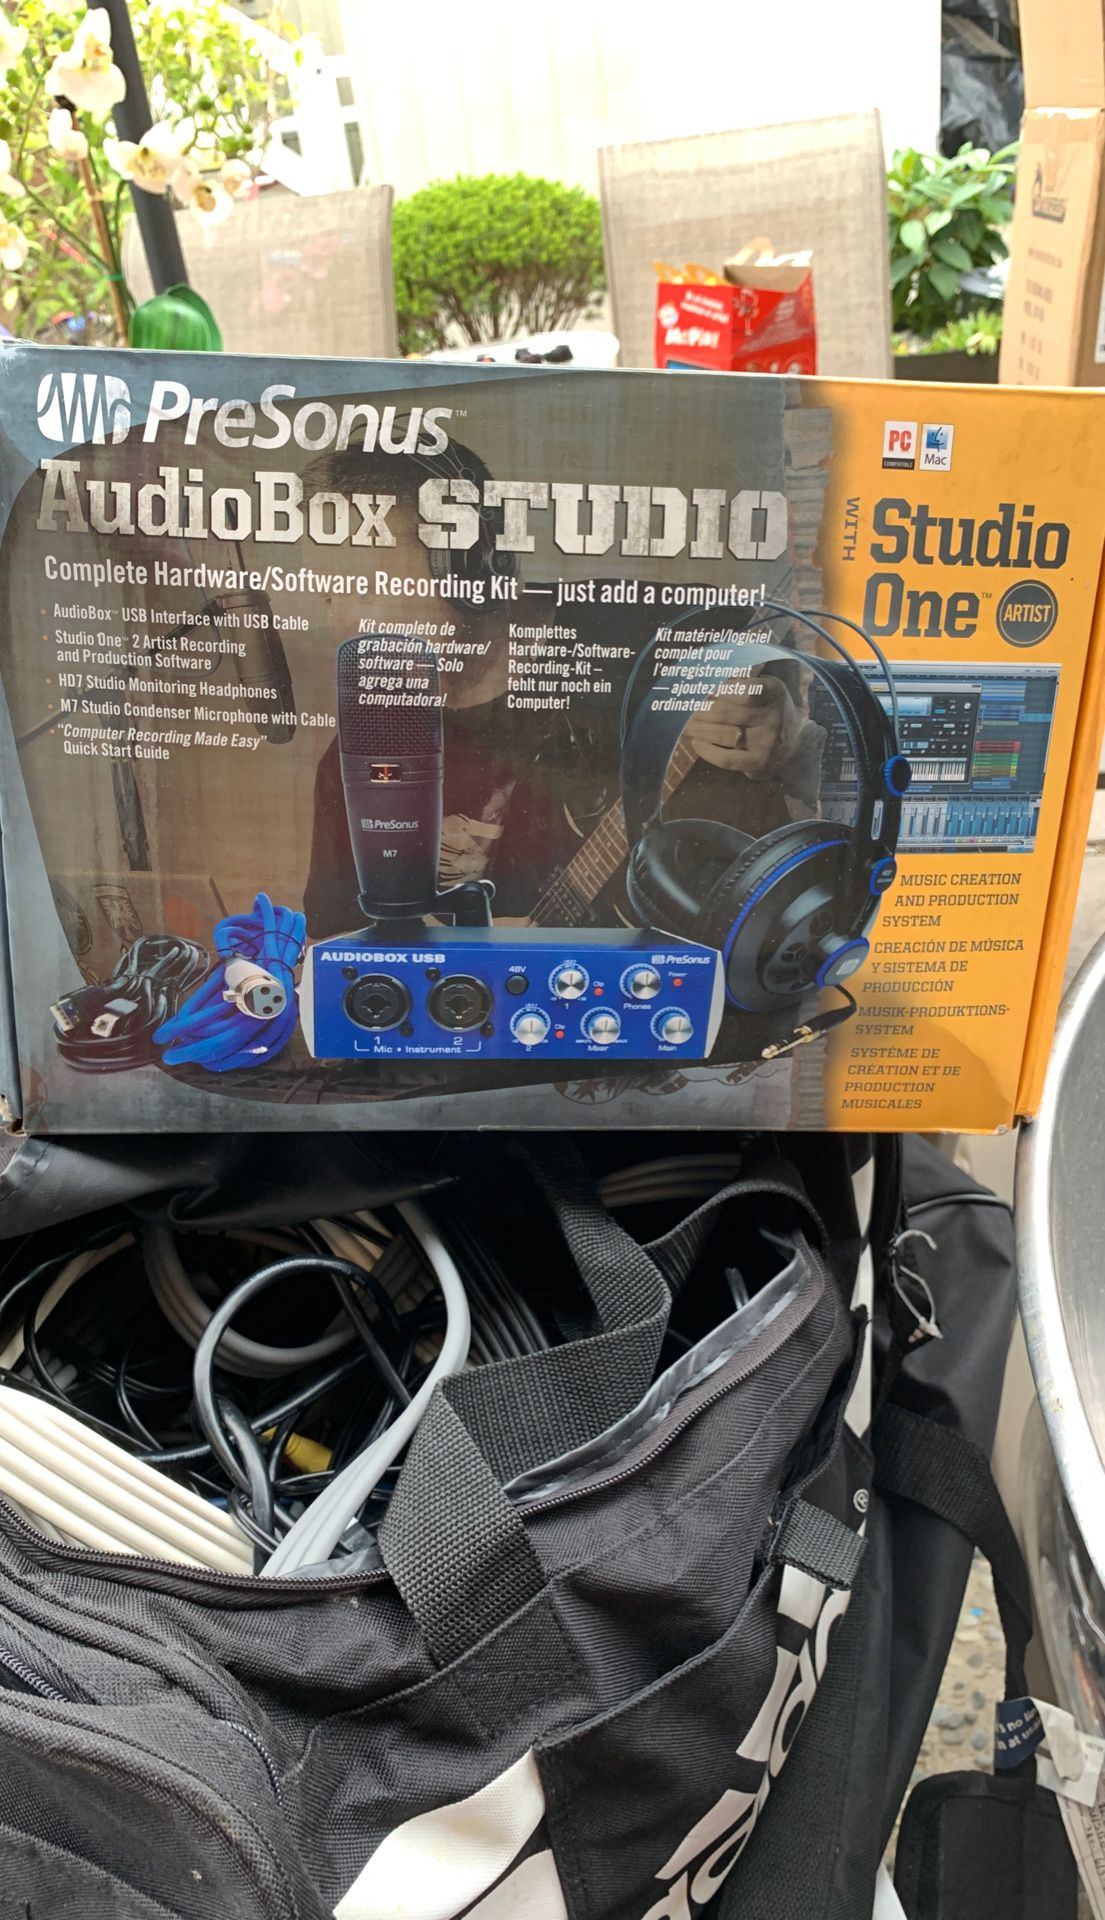 Audiobox studio